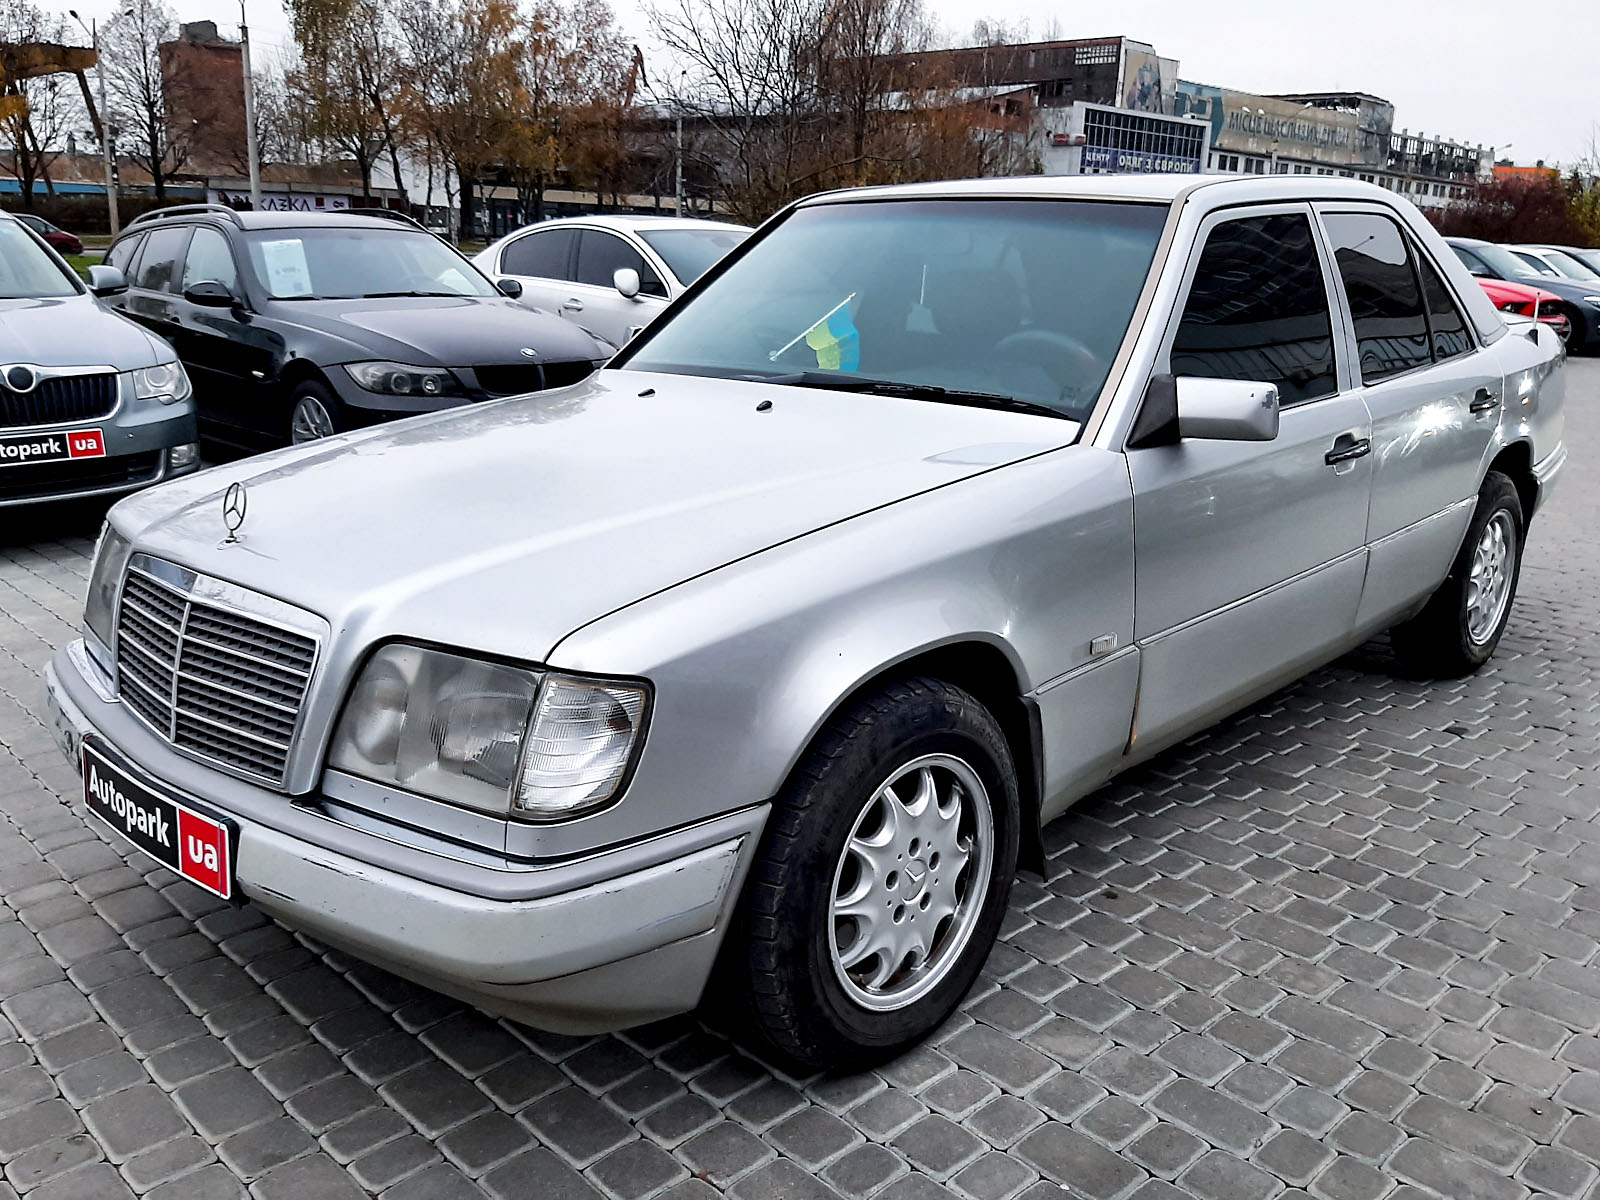 Mercedes-Benz W 124